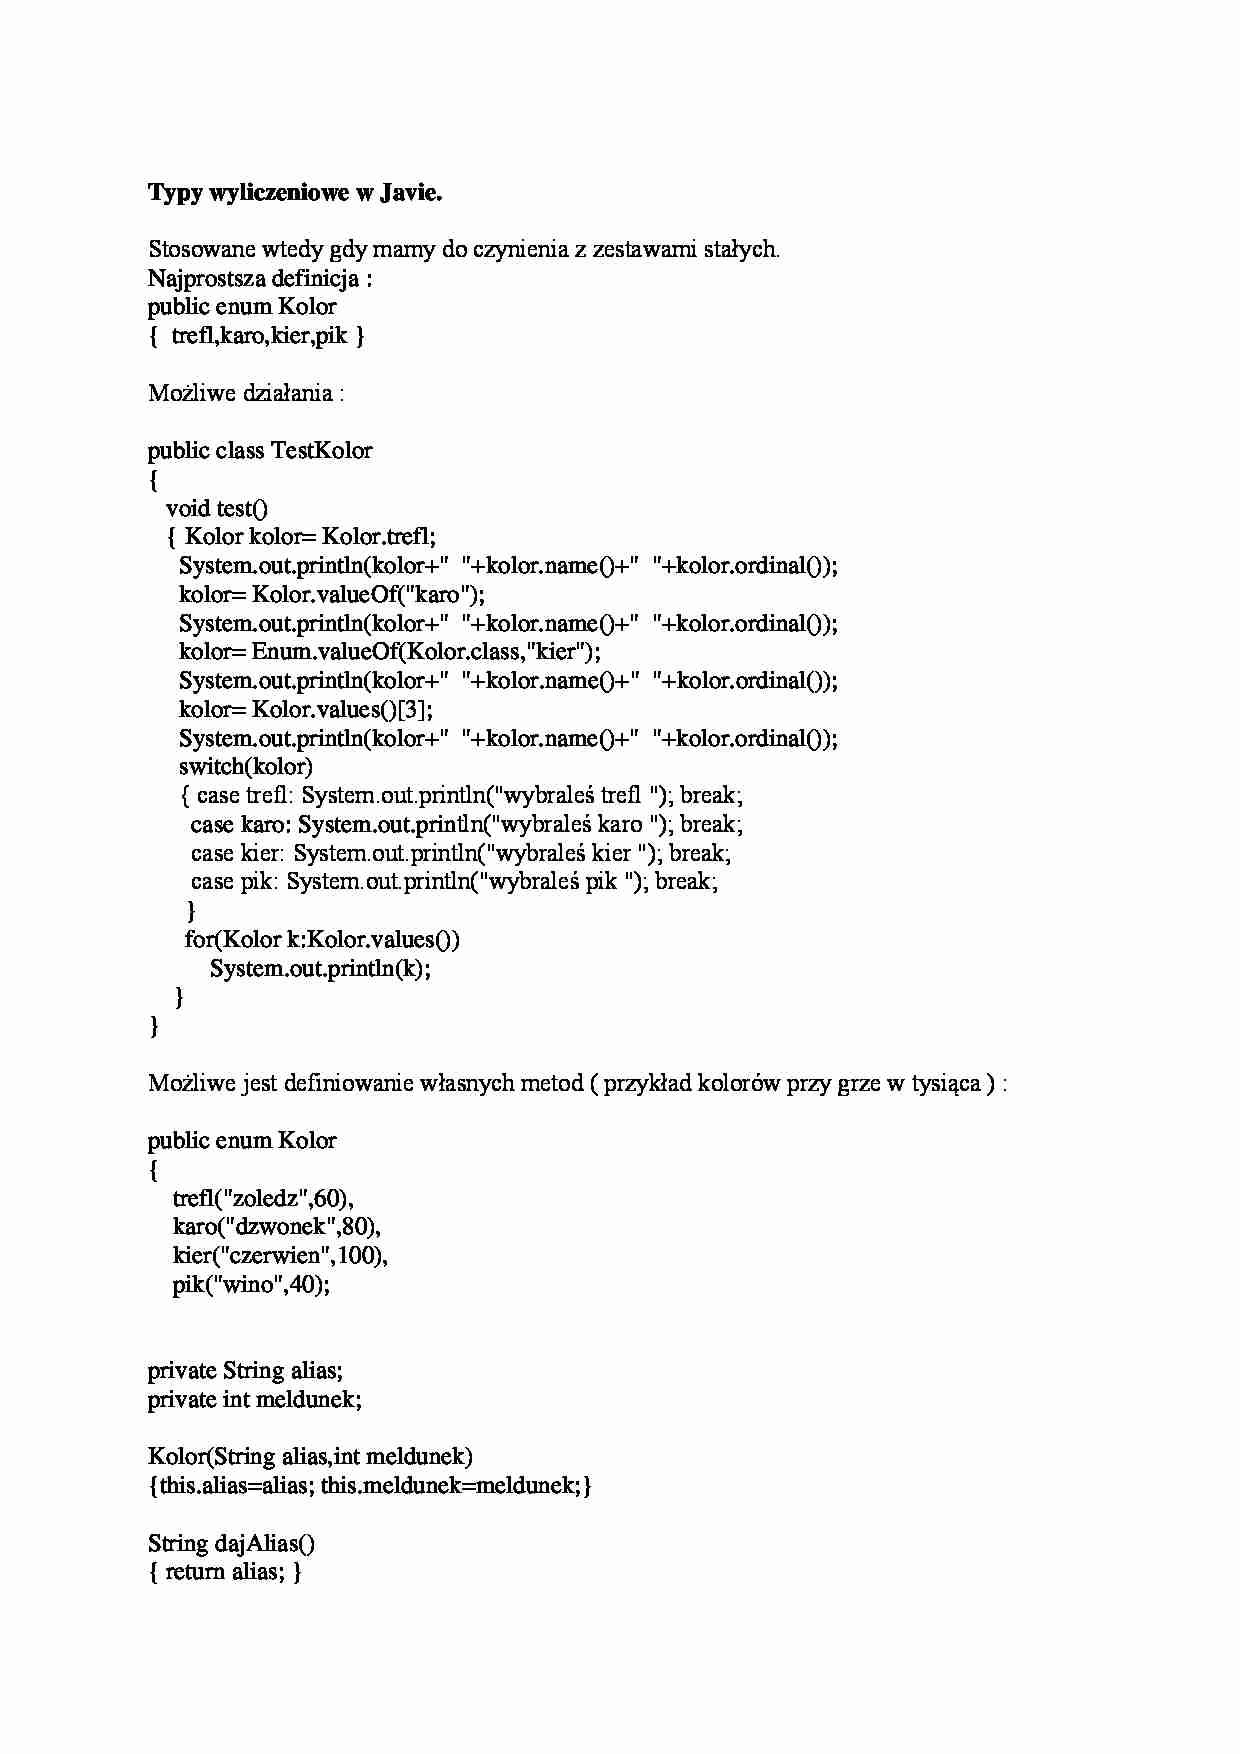 Typy wyliczeniowe w Javie-opracowanie - strona 1